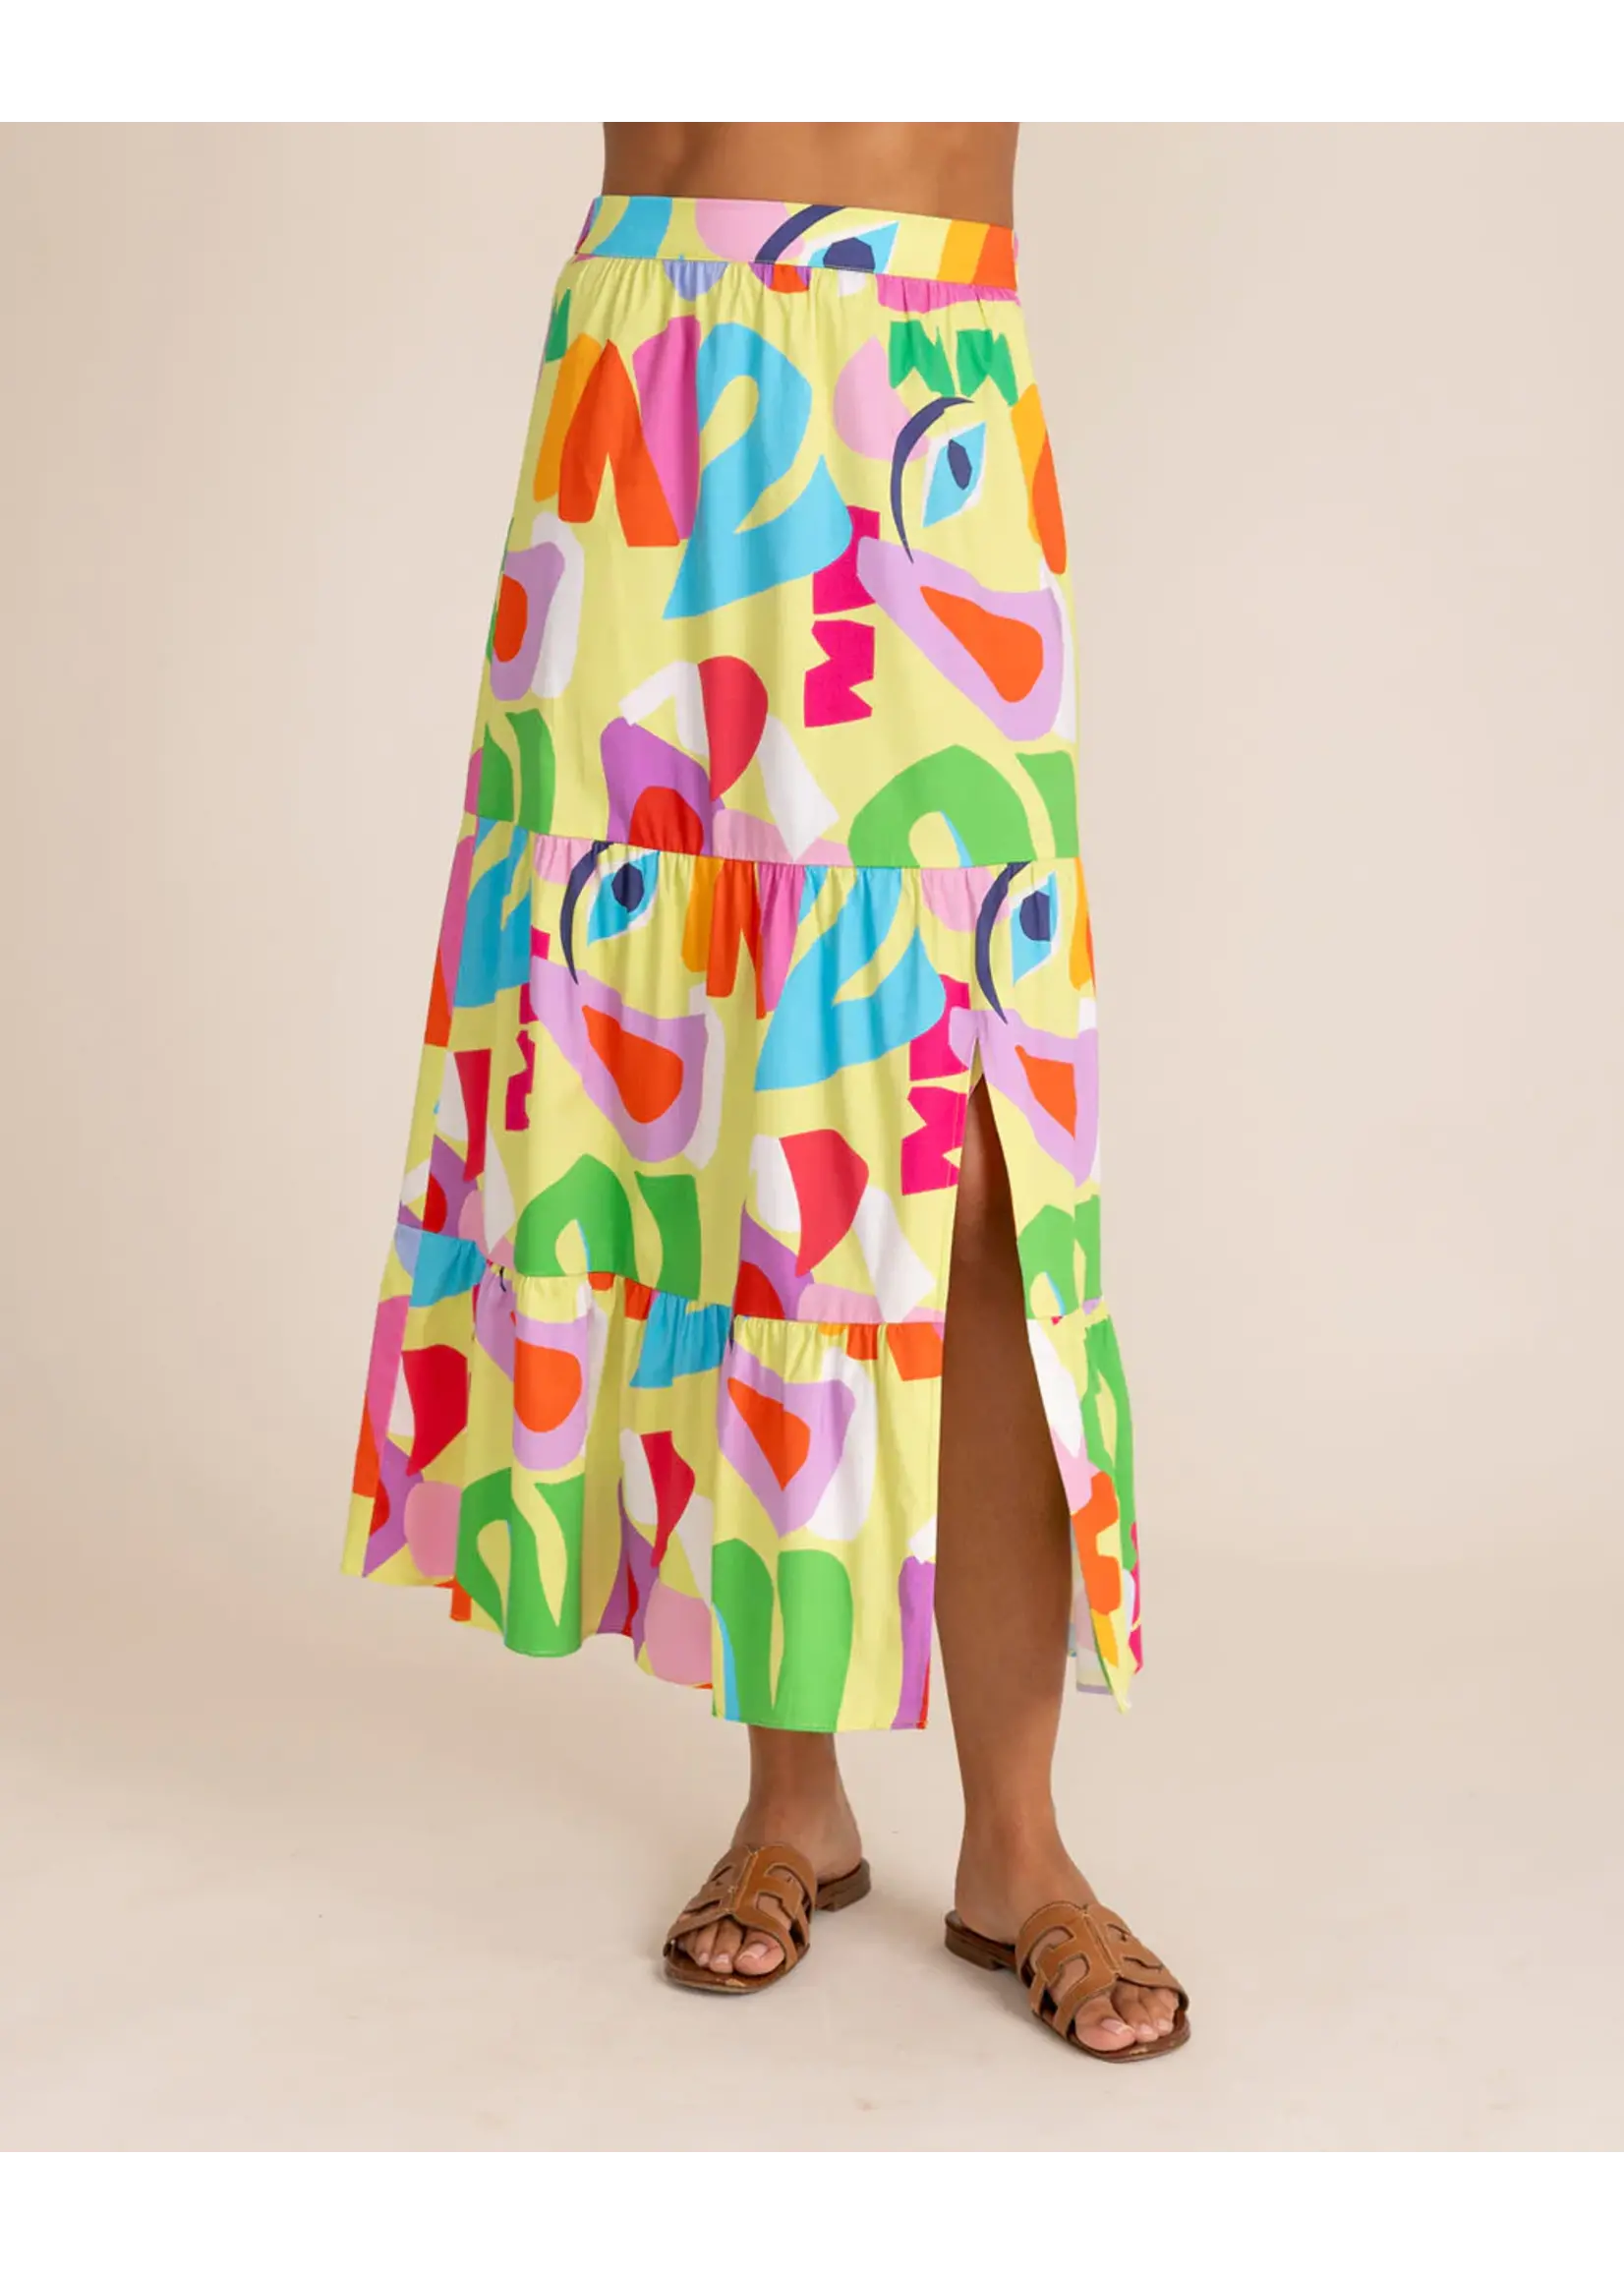 Alden Adair Alden Adair Summer Skirt Matisse